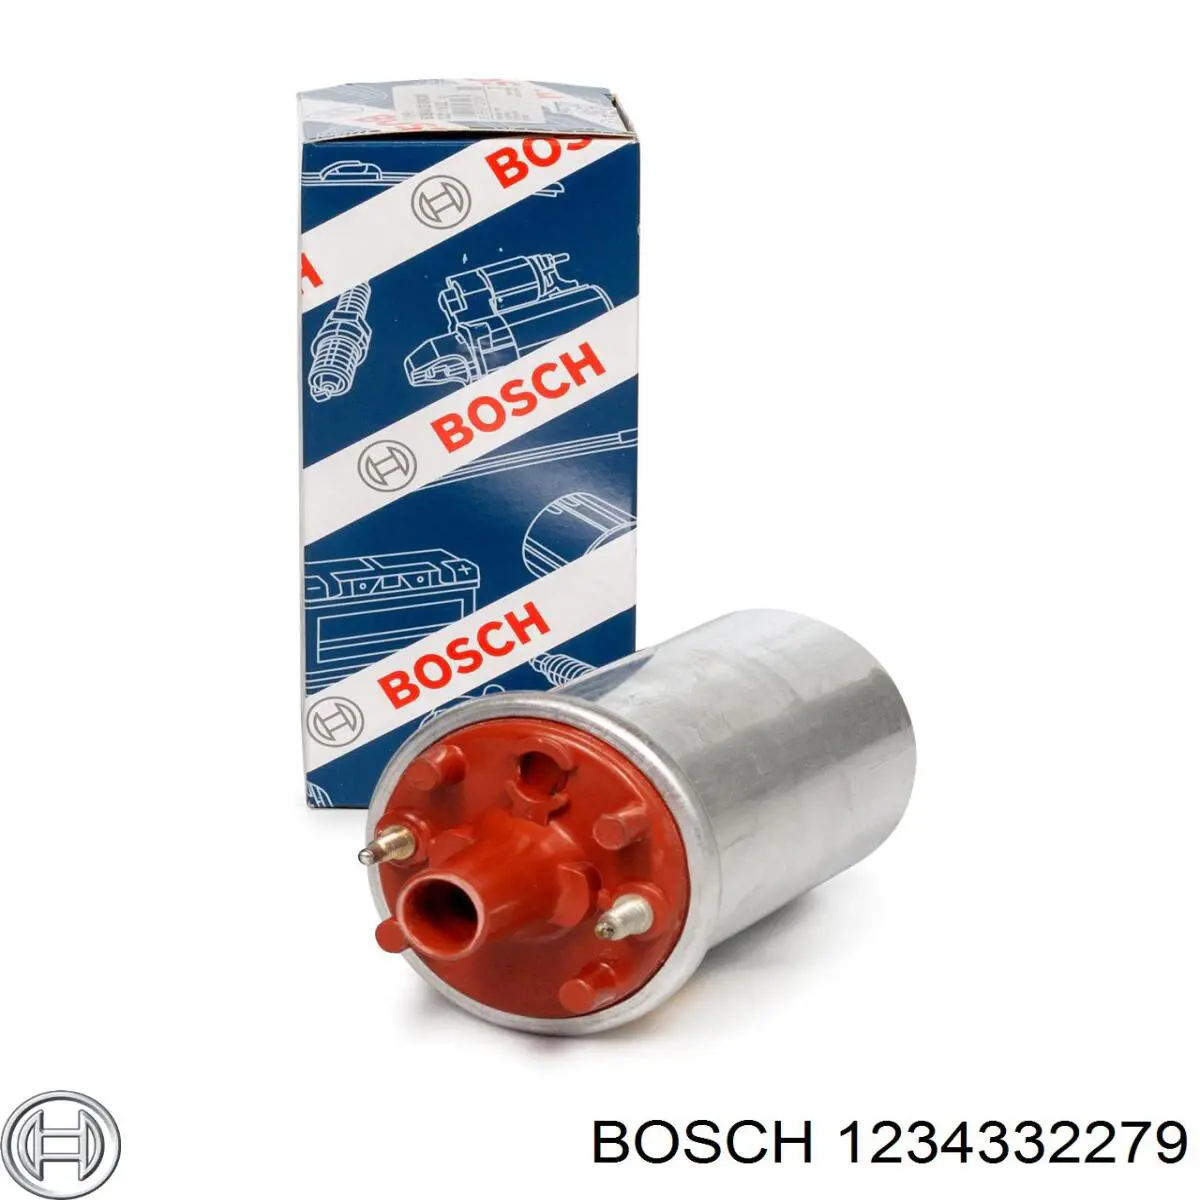 1234332279 Bosch rotor del distribuidor de encendido